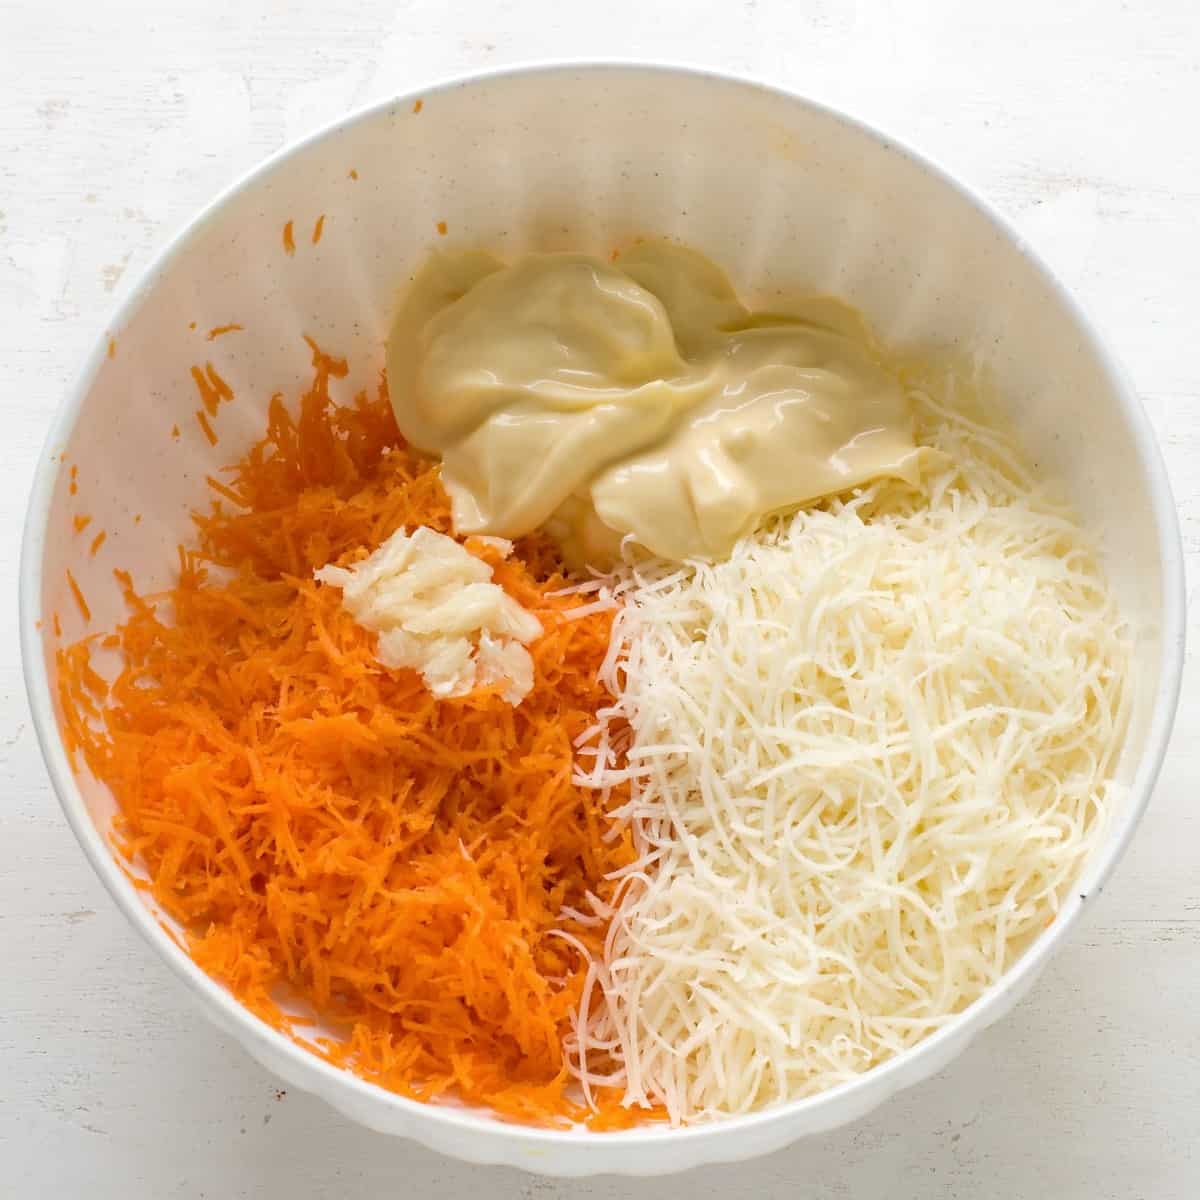 Zutaten für Karotten-Käse Aufstrich in weisser Schüssel.